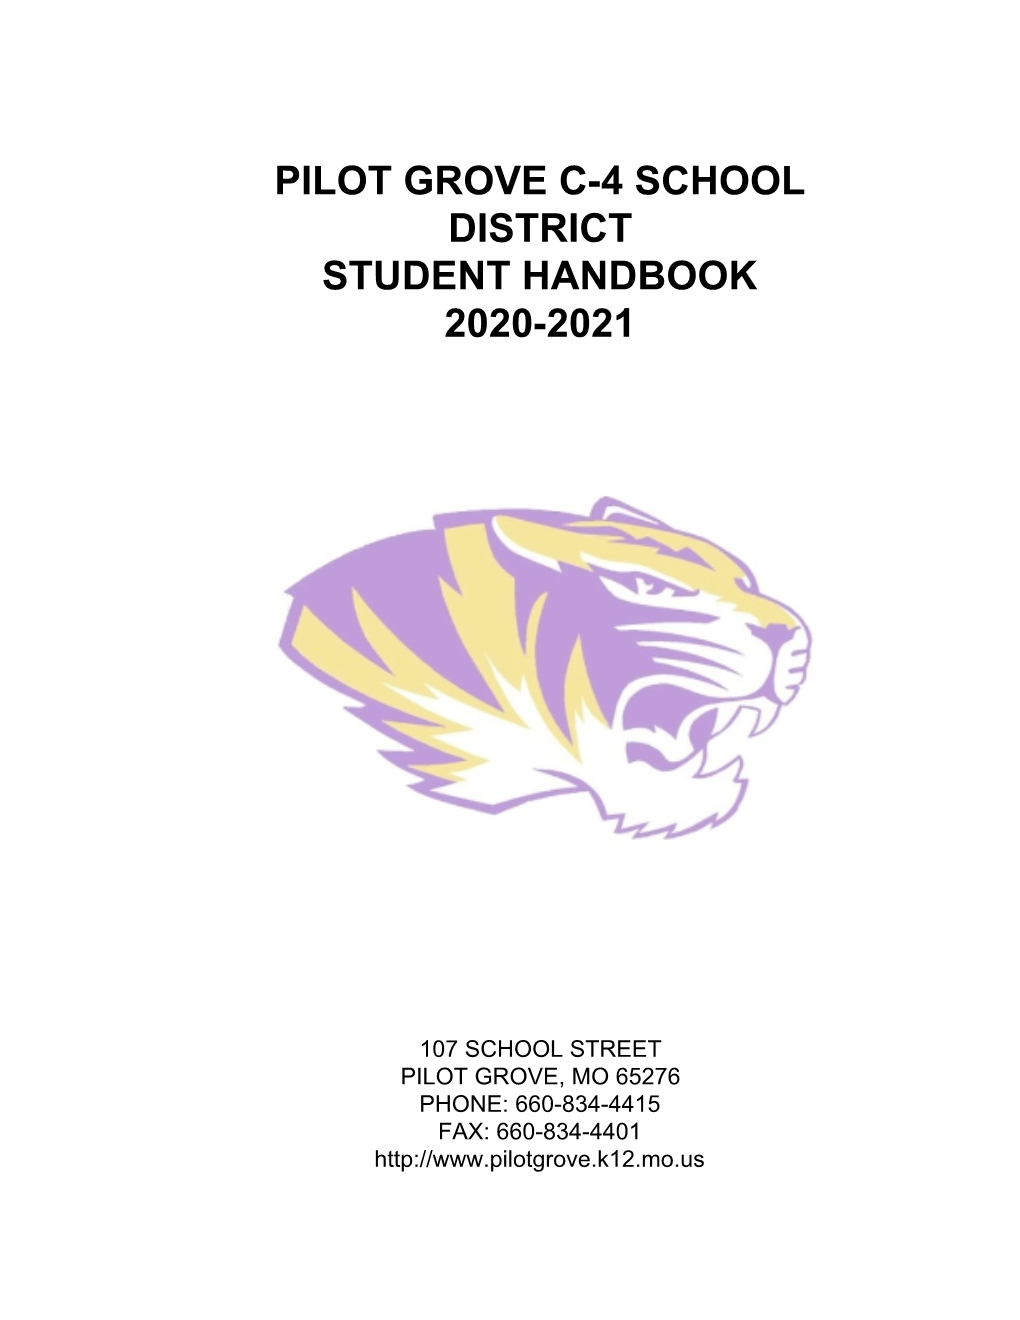 Pilot Grove C-4 School District Student Handbook 2020-2021